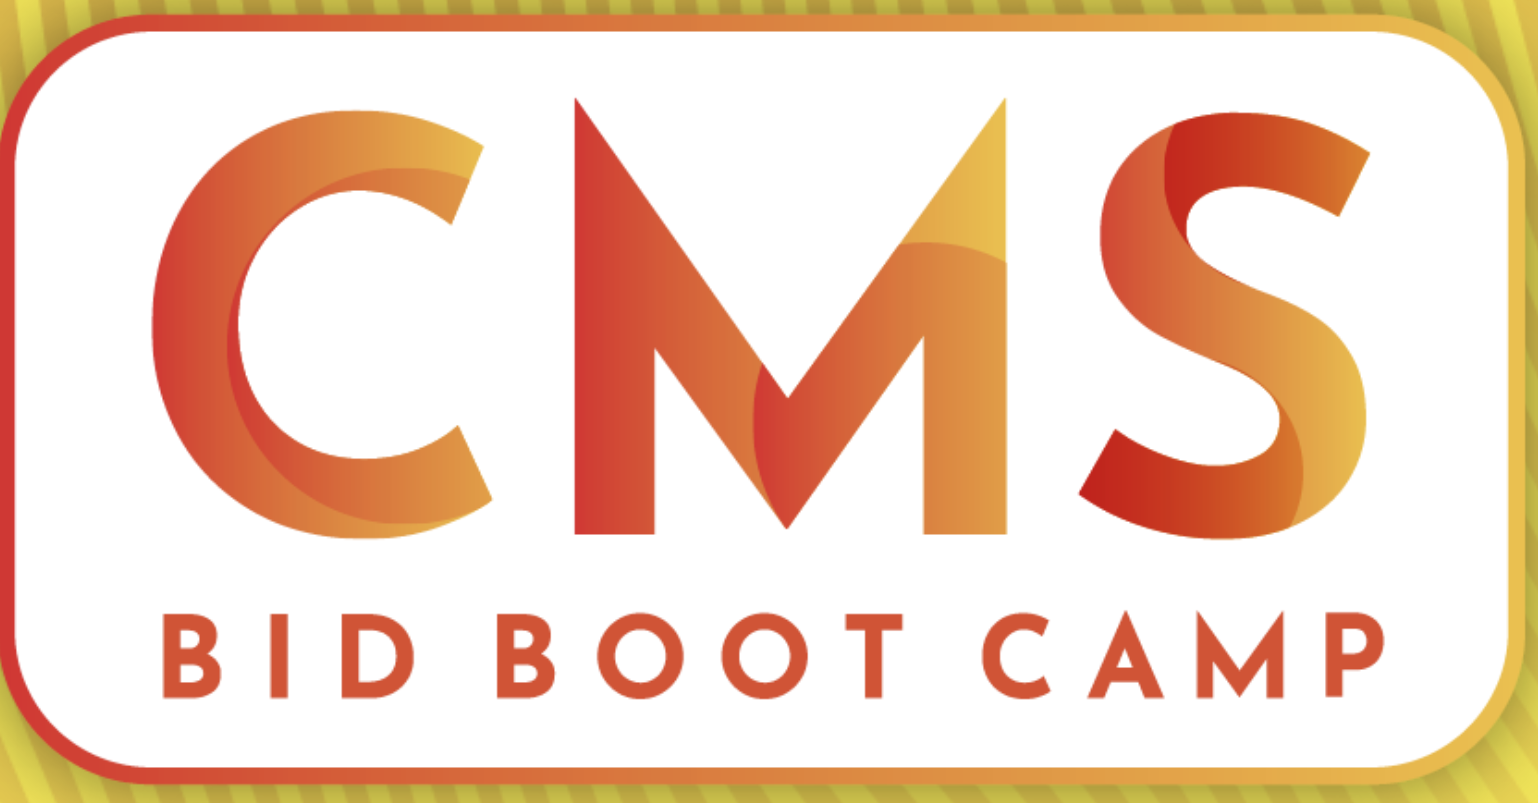 RISE CMS Bid Bootcamp